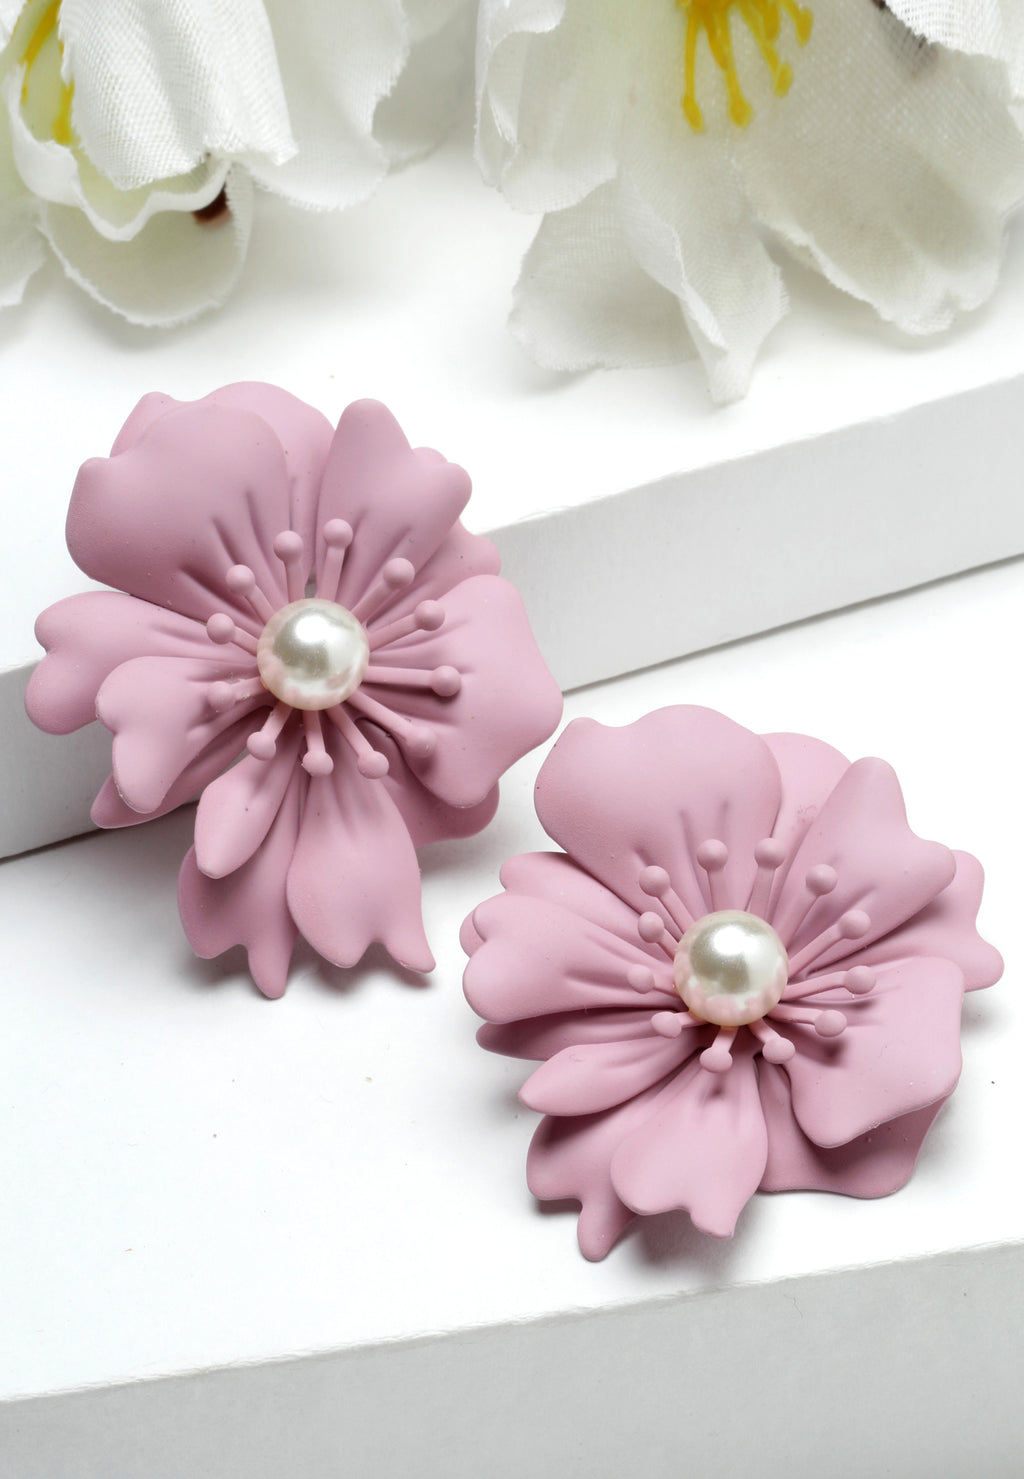 Floral Pearl Stud Earrings In Light Pink